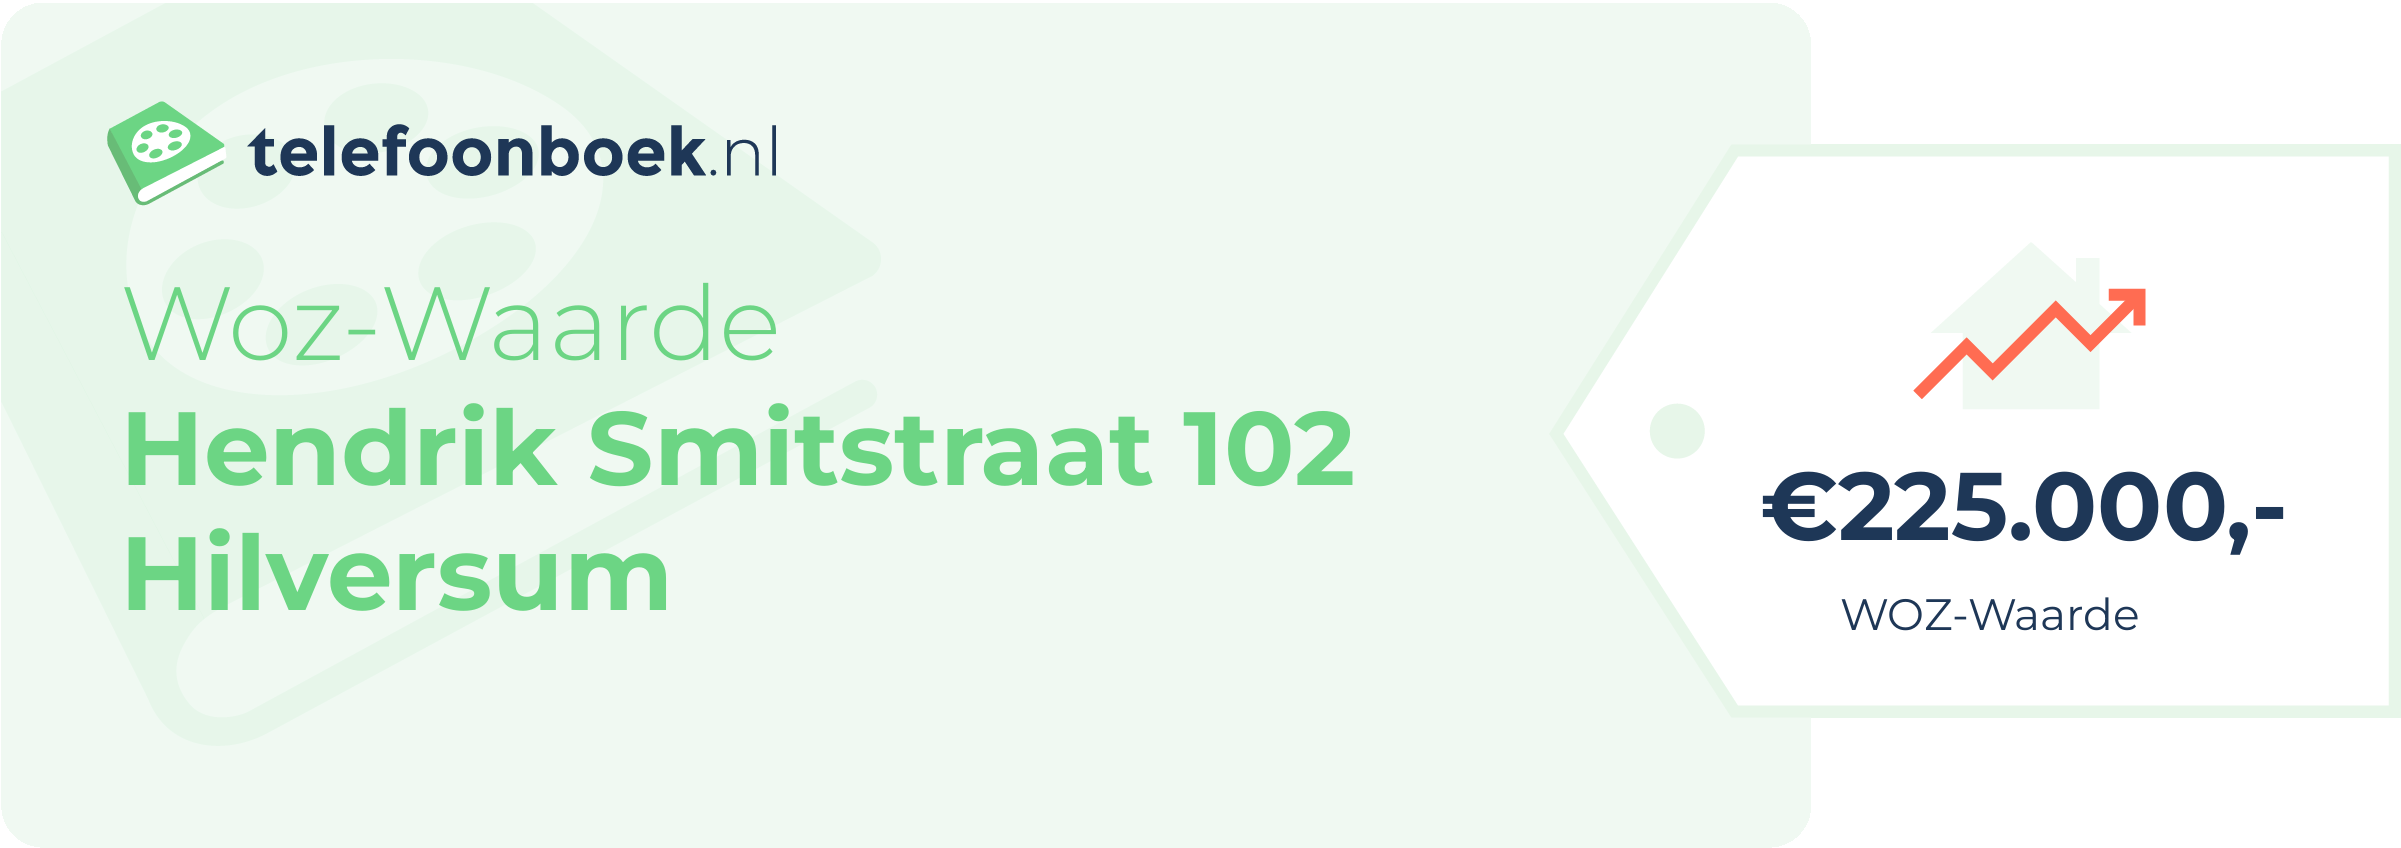 WOZ-waarde Hendrik Smitstraat 102 Hilversum